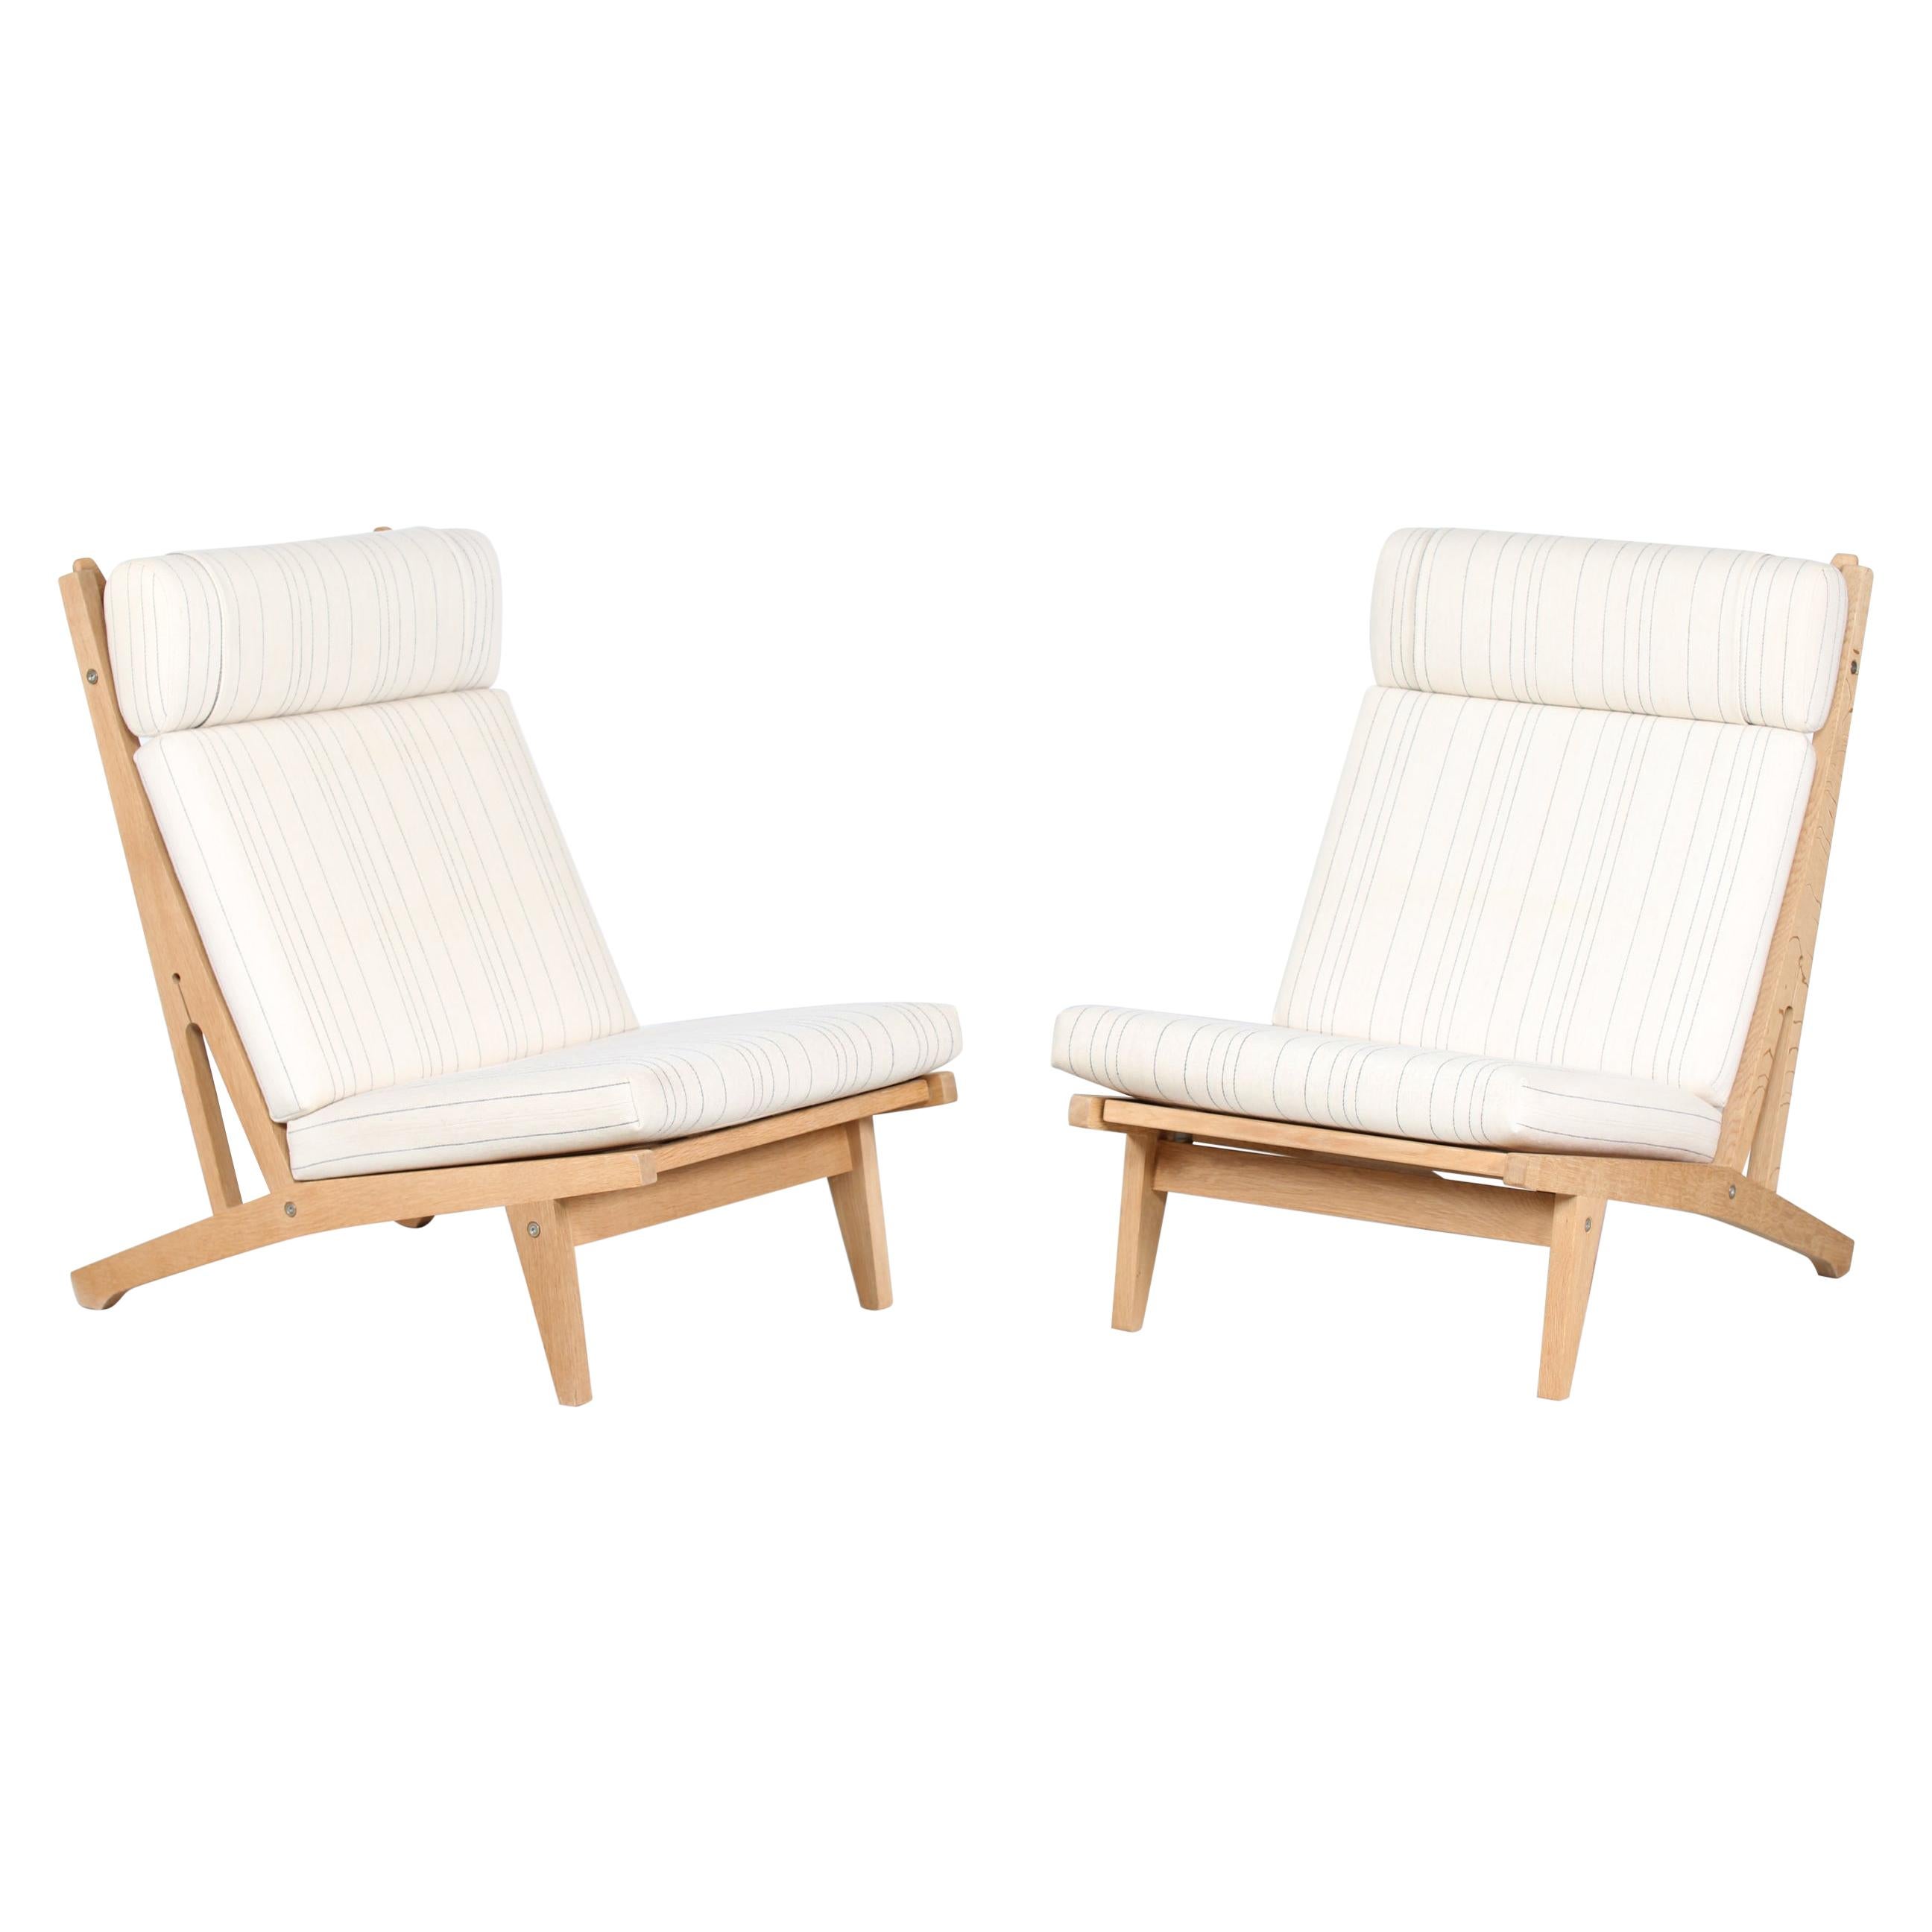 Hans J. Wegner Pair of High Lounge Chairs GE 375 of Oak and Wool by GETAMA 1970s